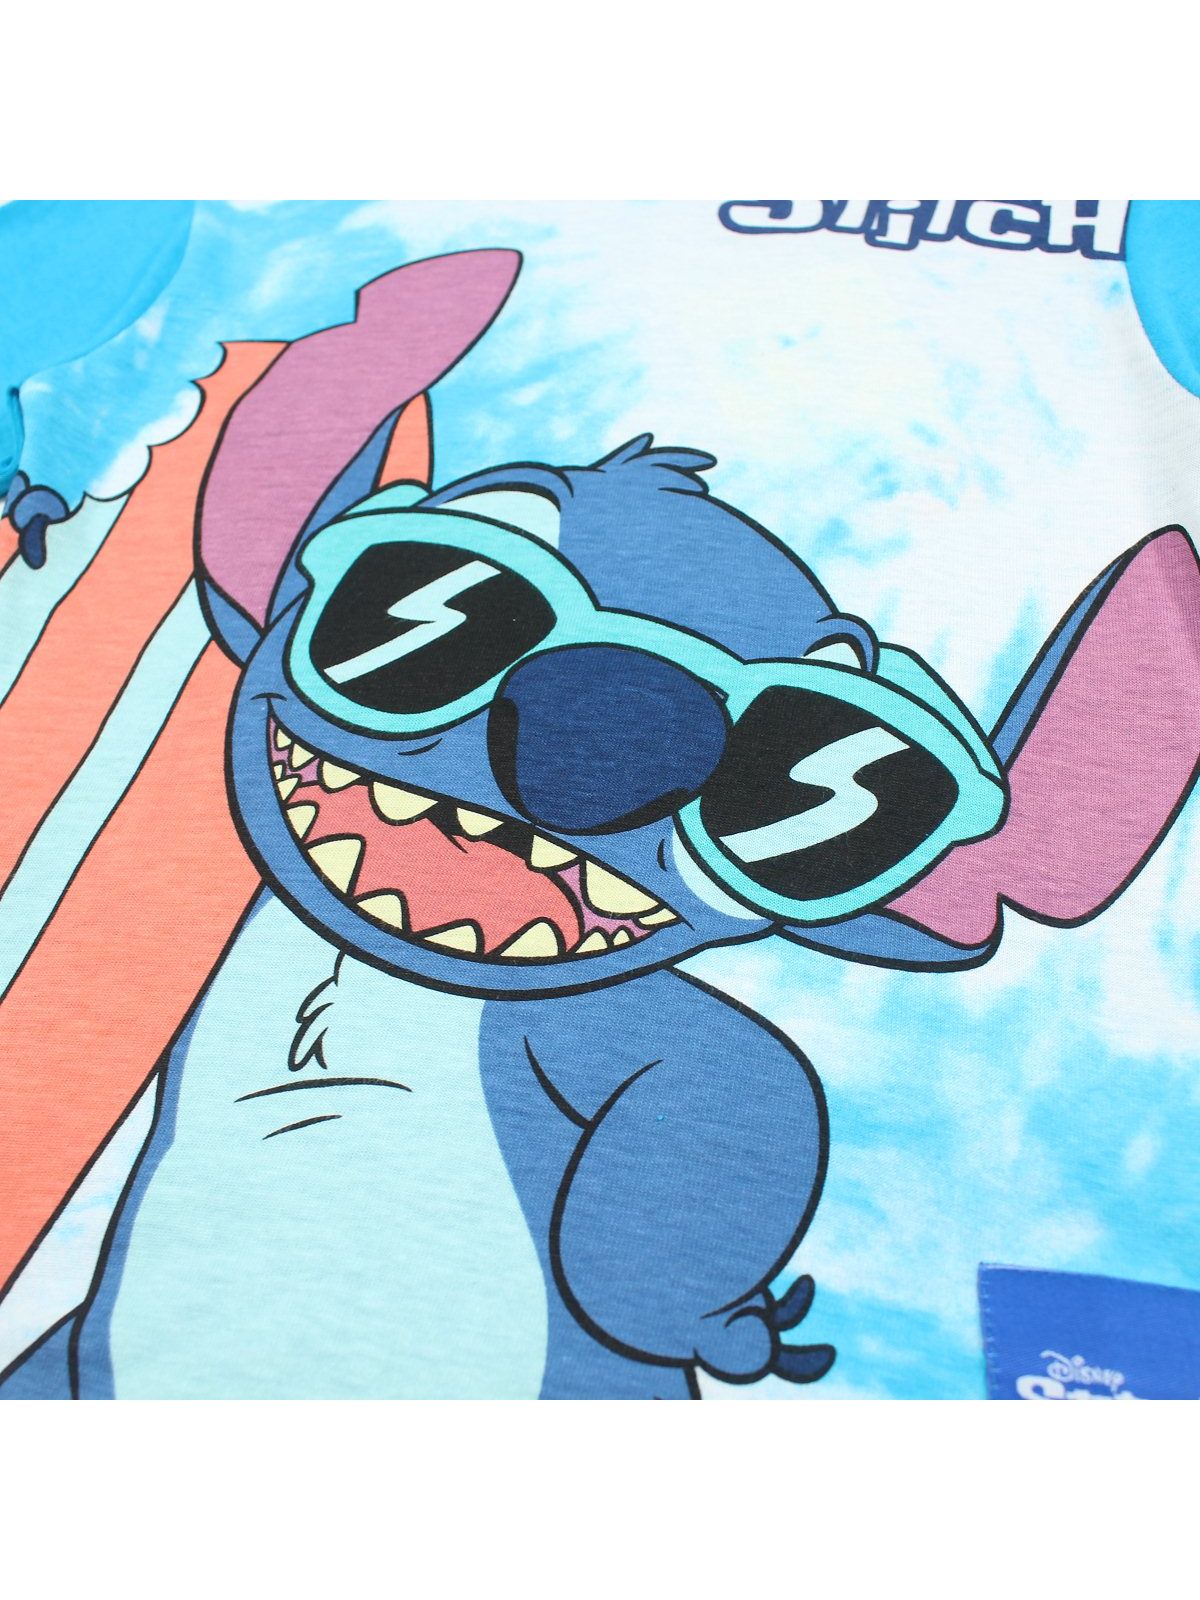 Camiseta Lilo y Stitch.